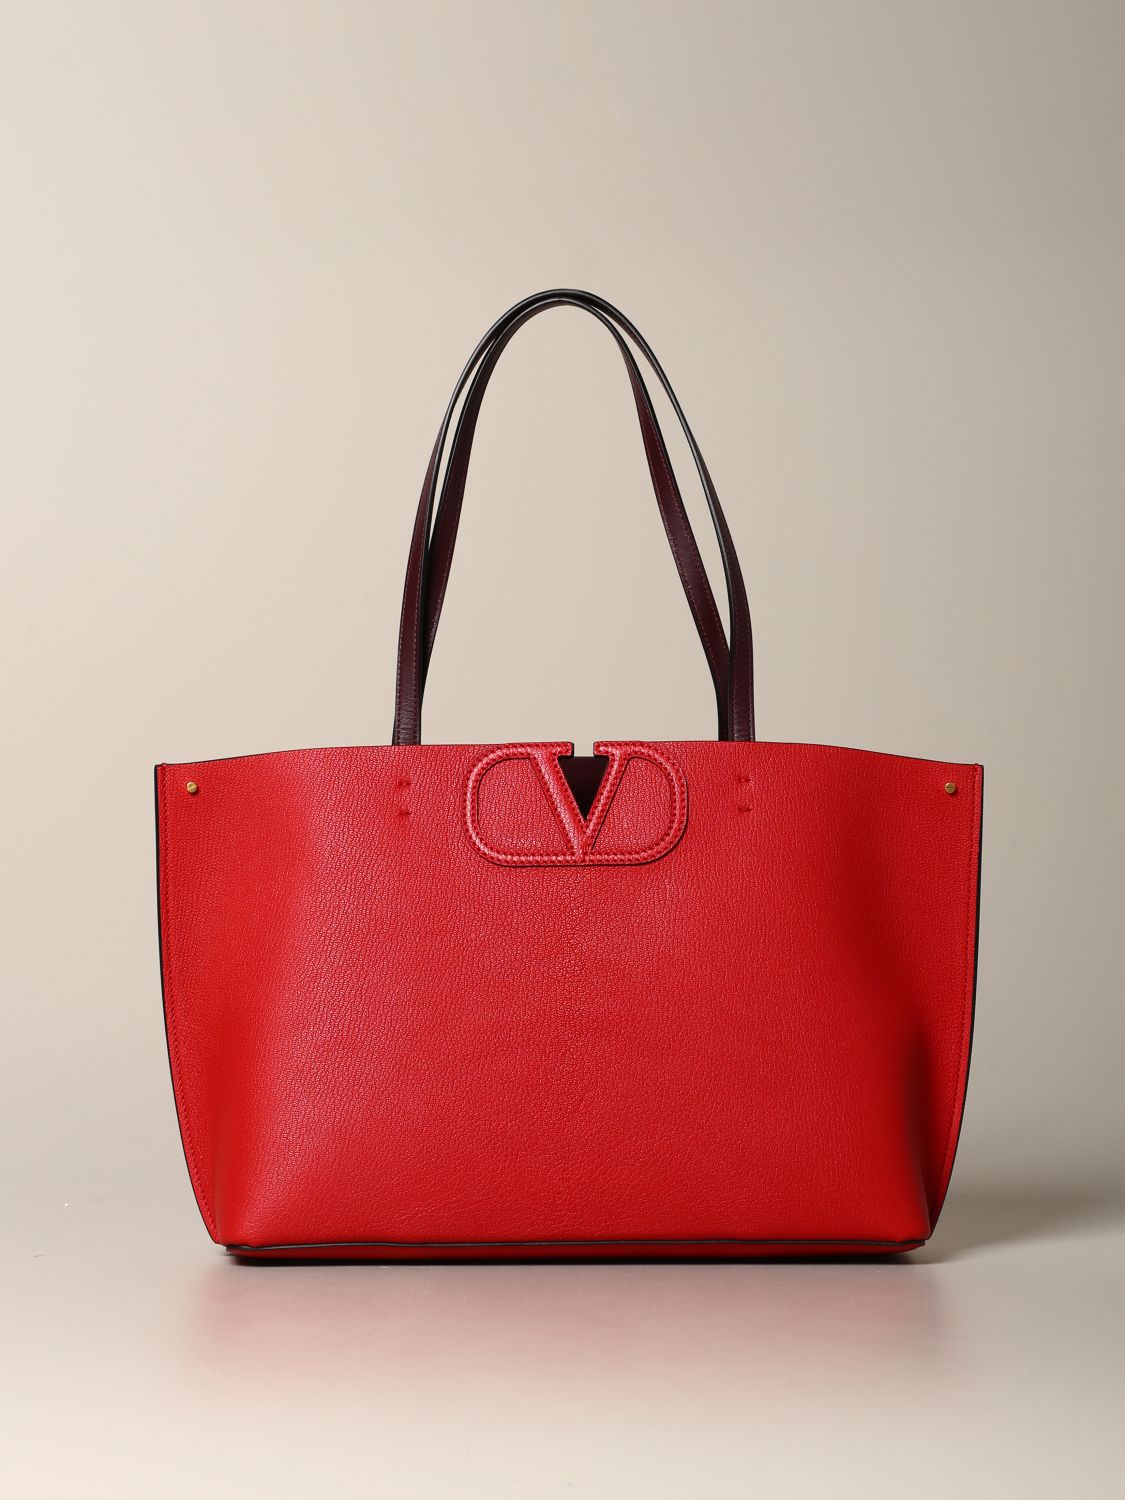 Valentino Garavani tote bags for women